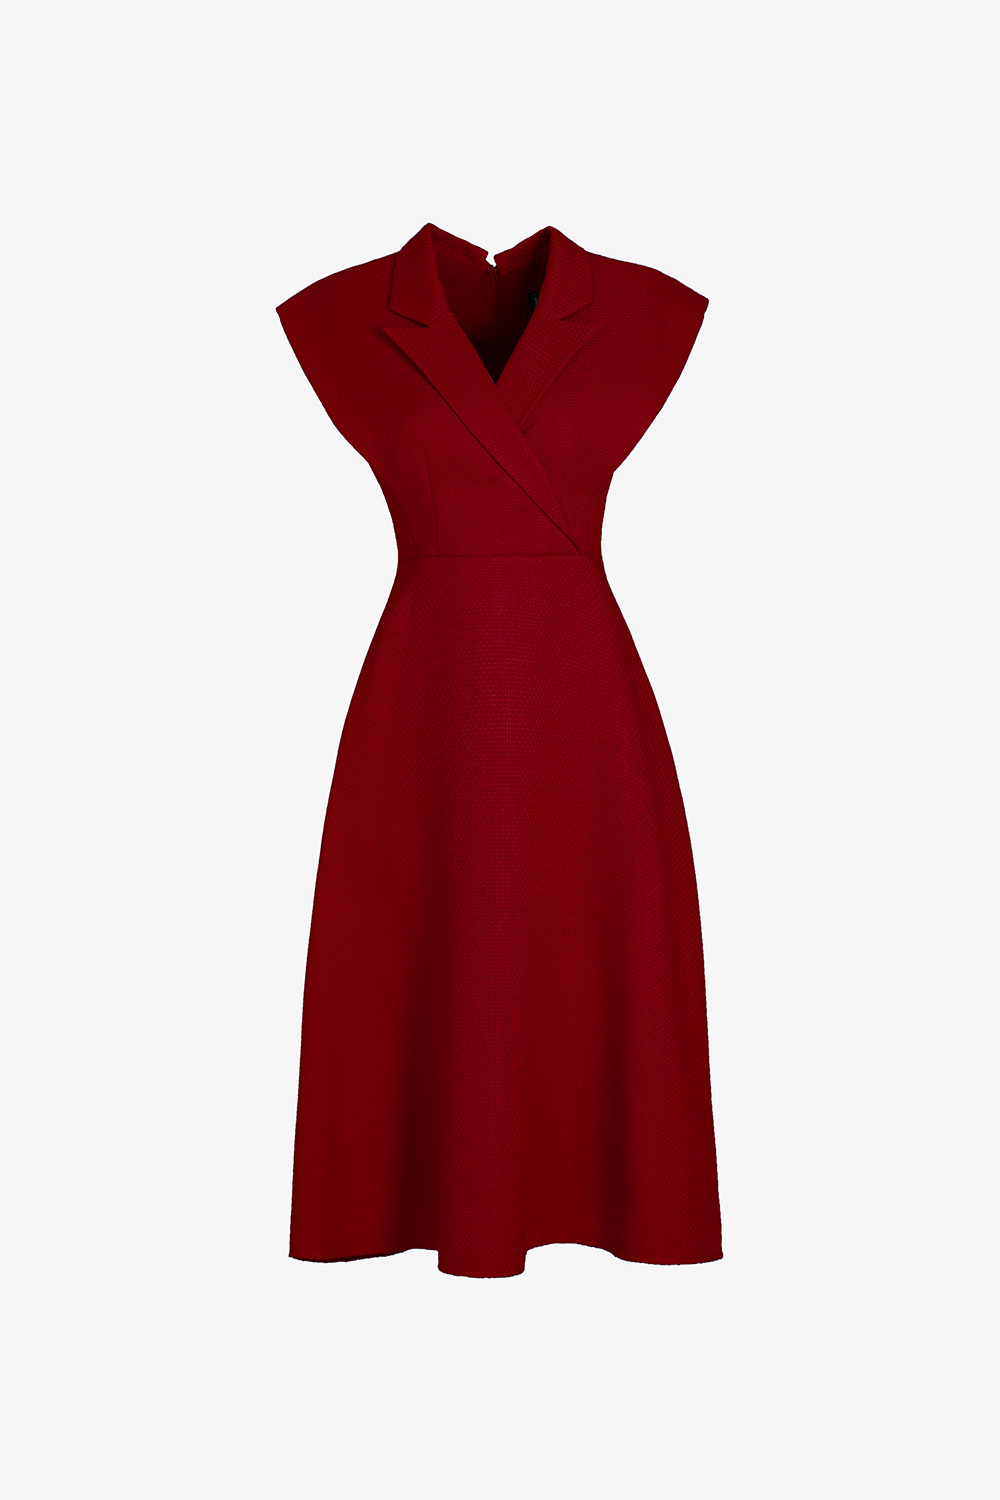 Đầm đỏ dự tiệc dáng xòe phối nơ vai KK165-33 | Thời trang công sở K&K  Fashion